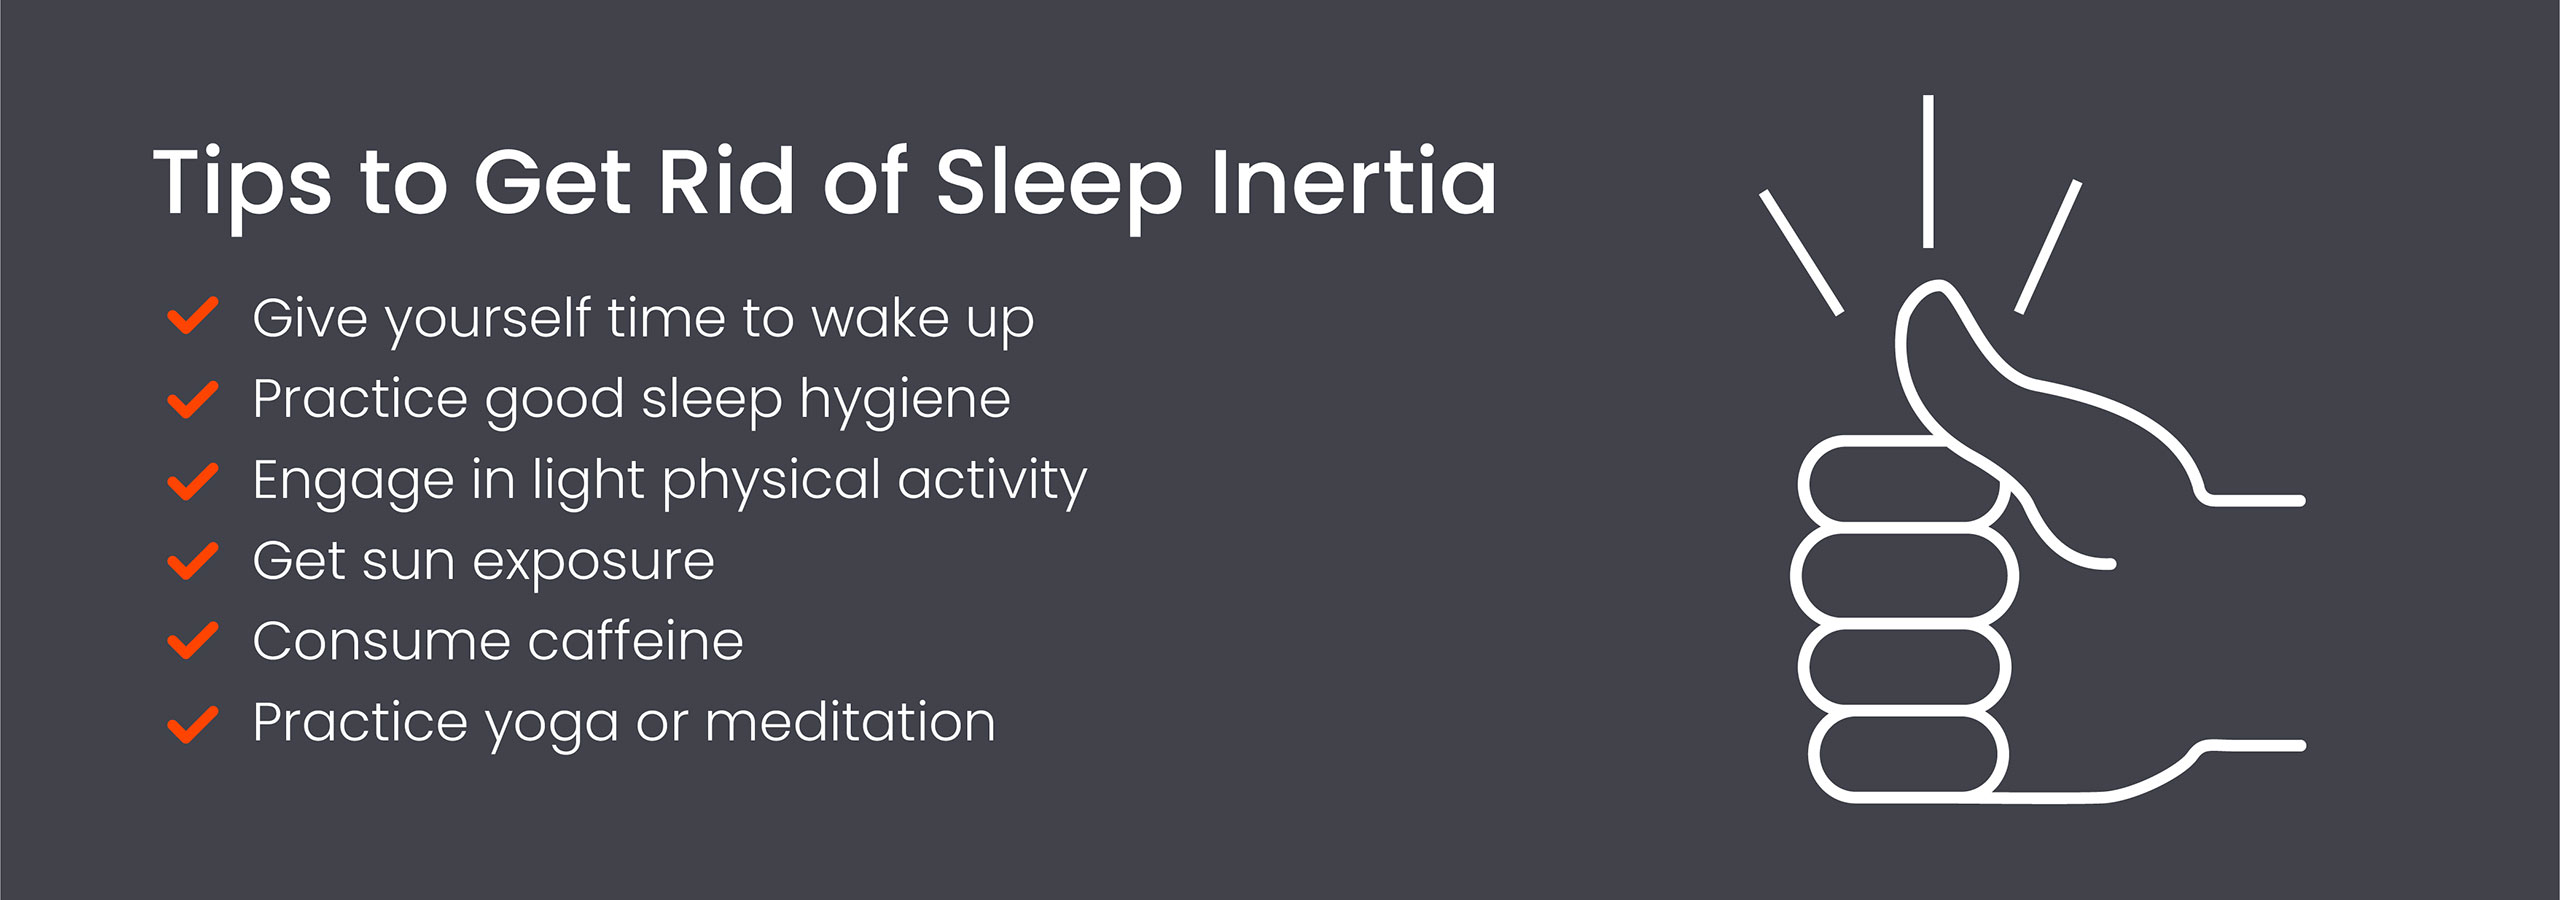 Tips to get rid of sleep inertia